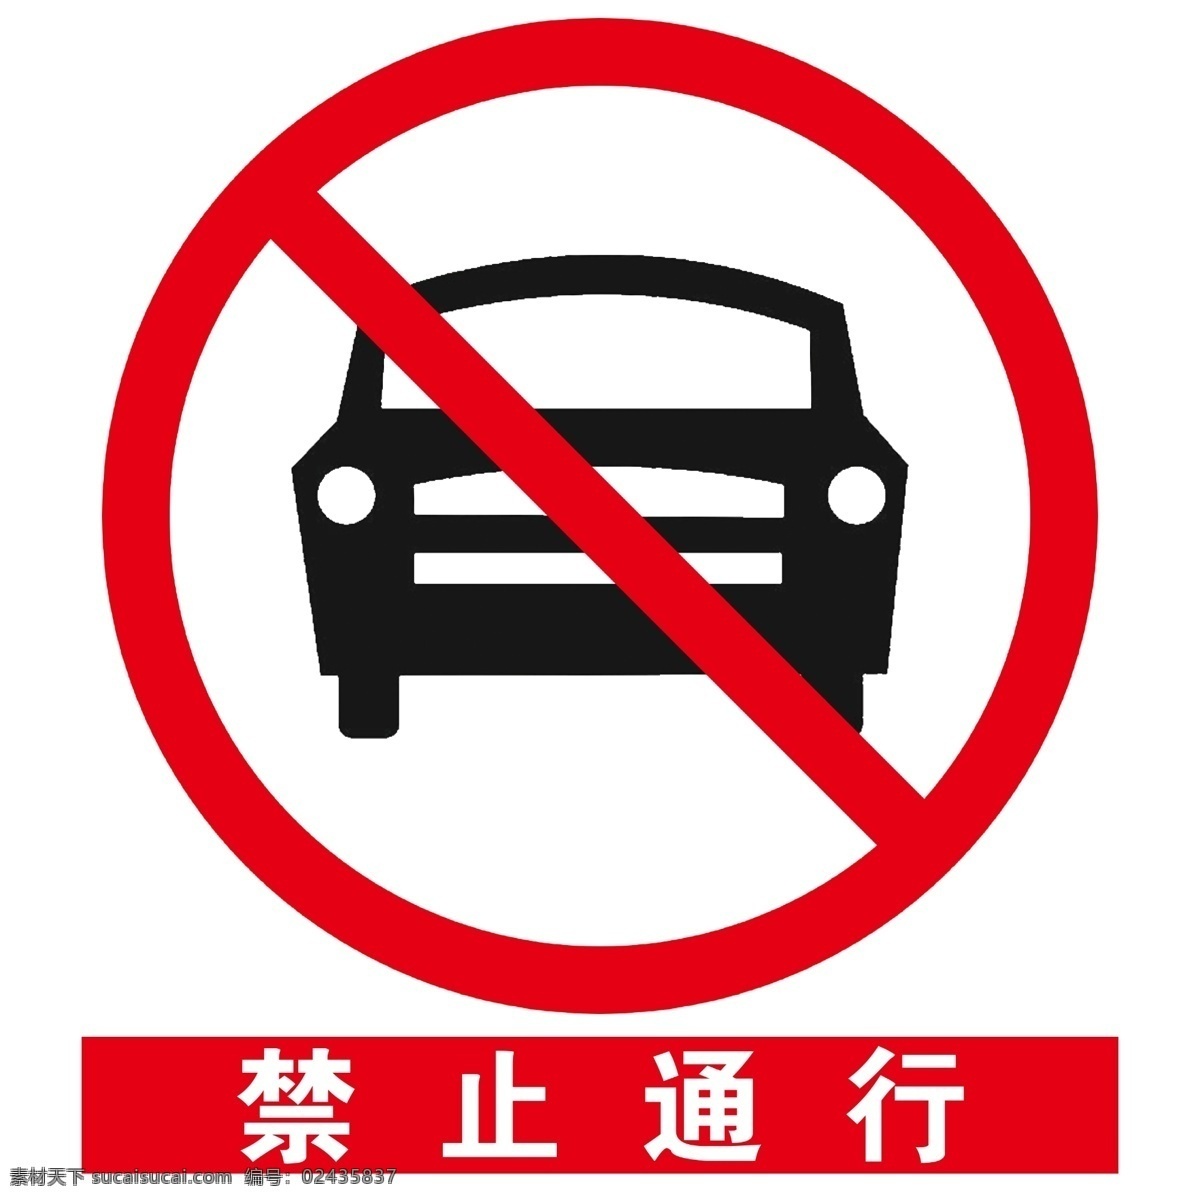 安全 标示 禁止 通行 安全标示续 标志图标 公共标识标志